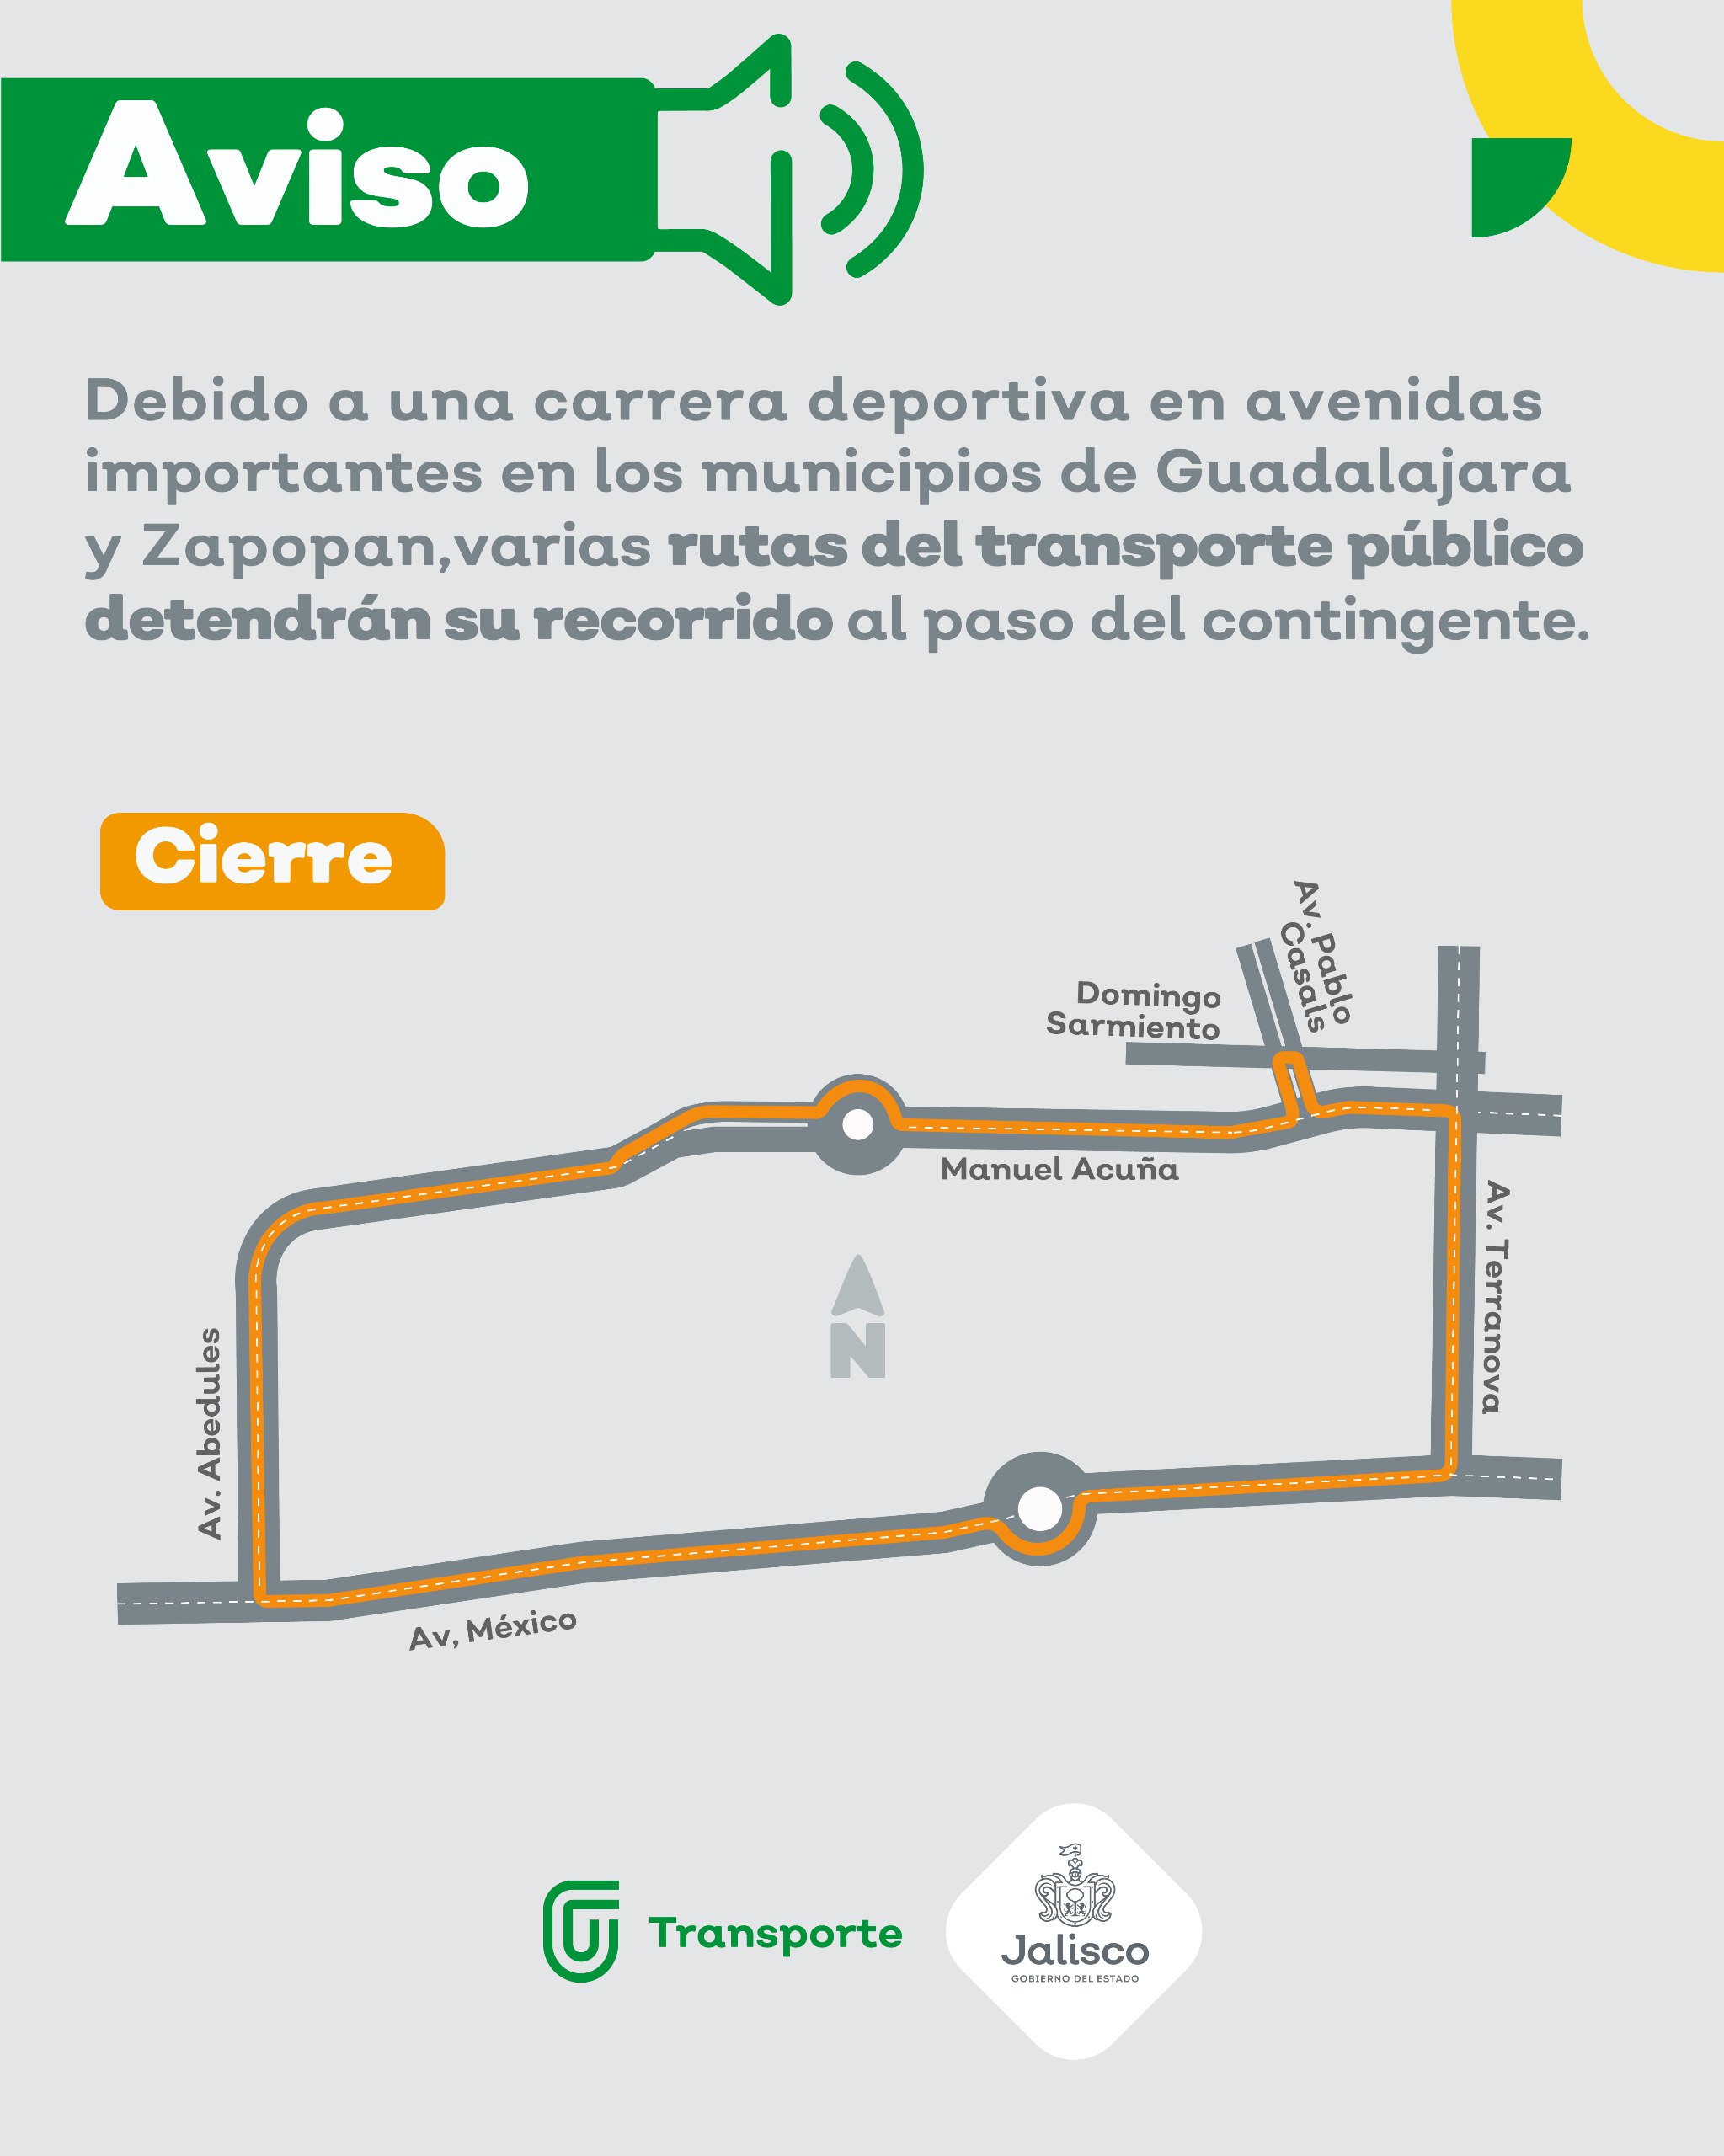 Por una carrera deportiva en avenidas importantes de los municipios de Guadalajara y Zapopan, varias rutas detendrán momentáneamente su derrotero